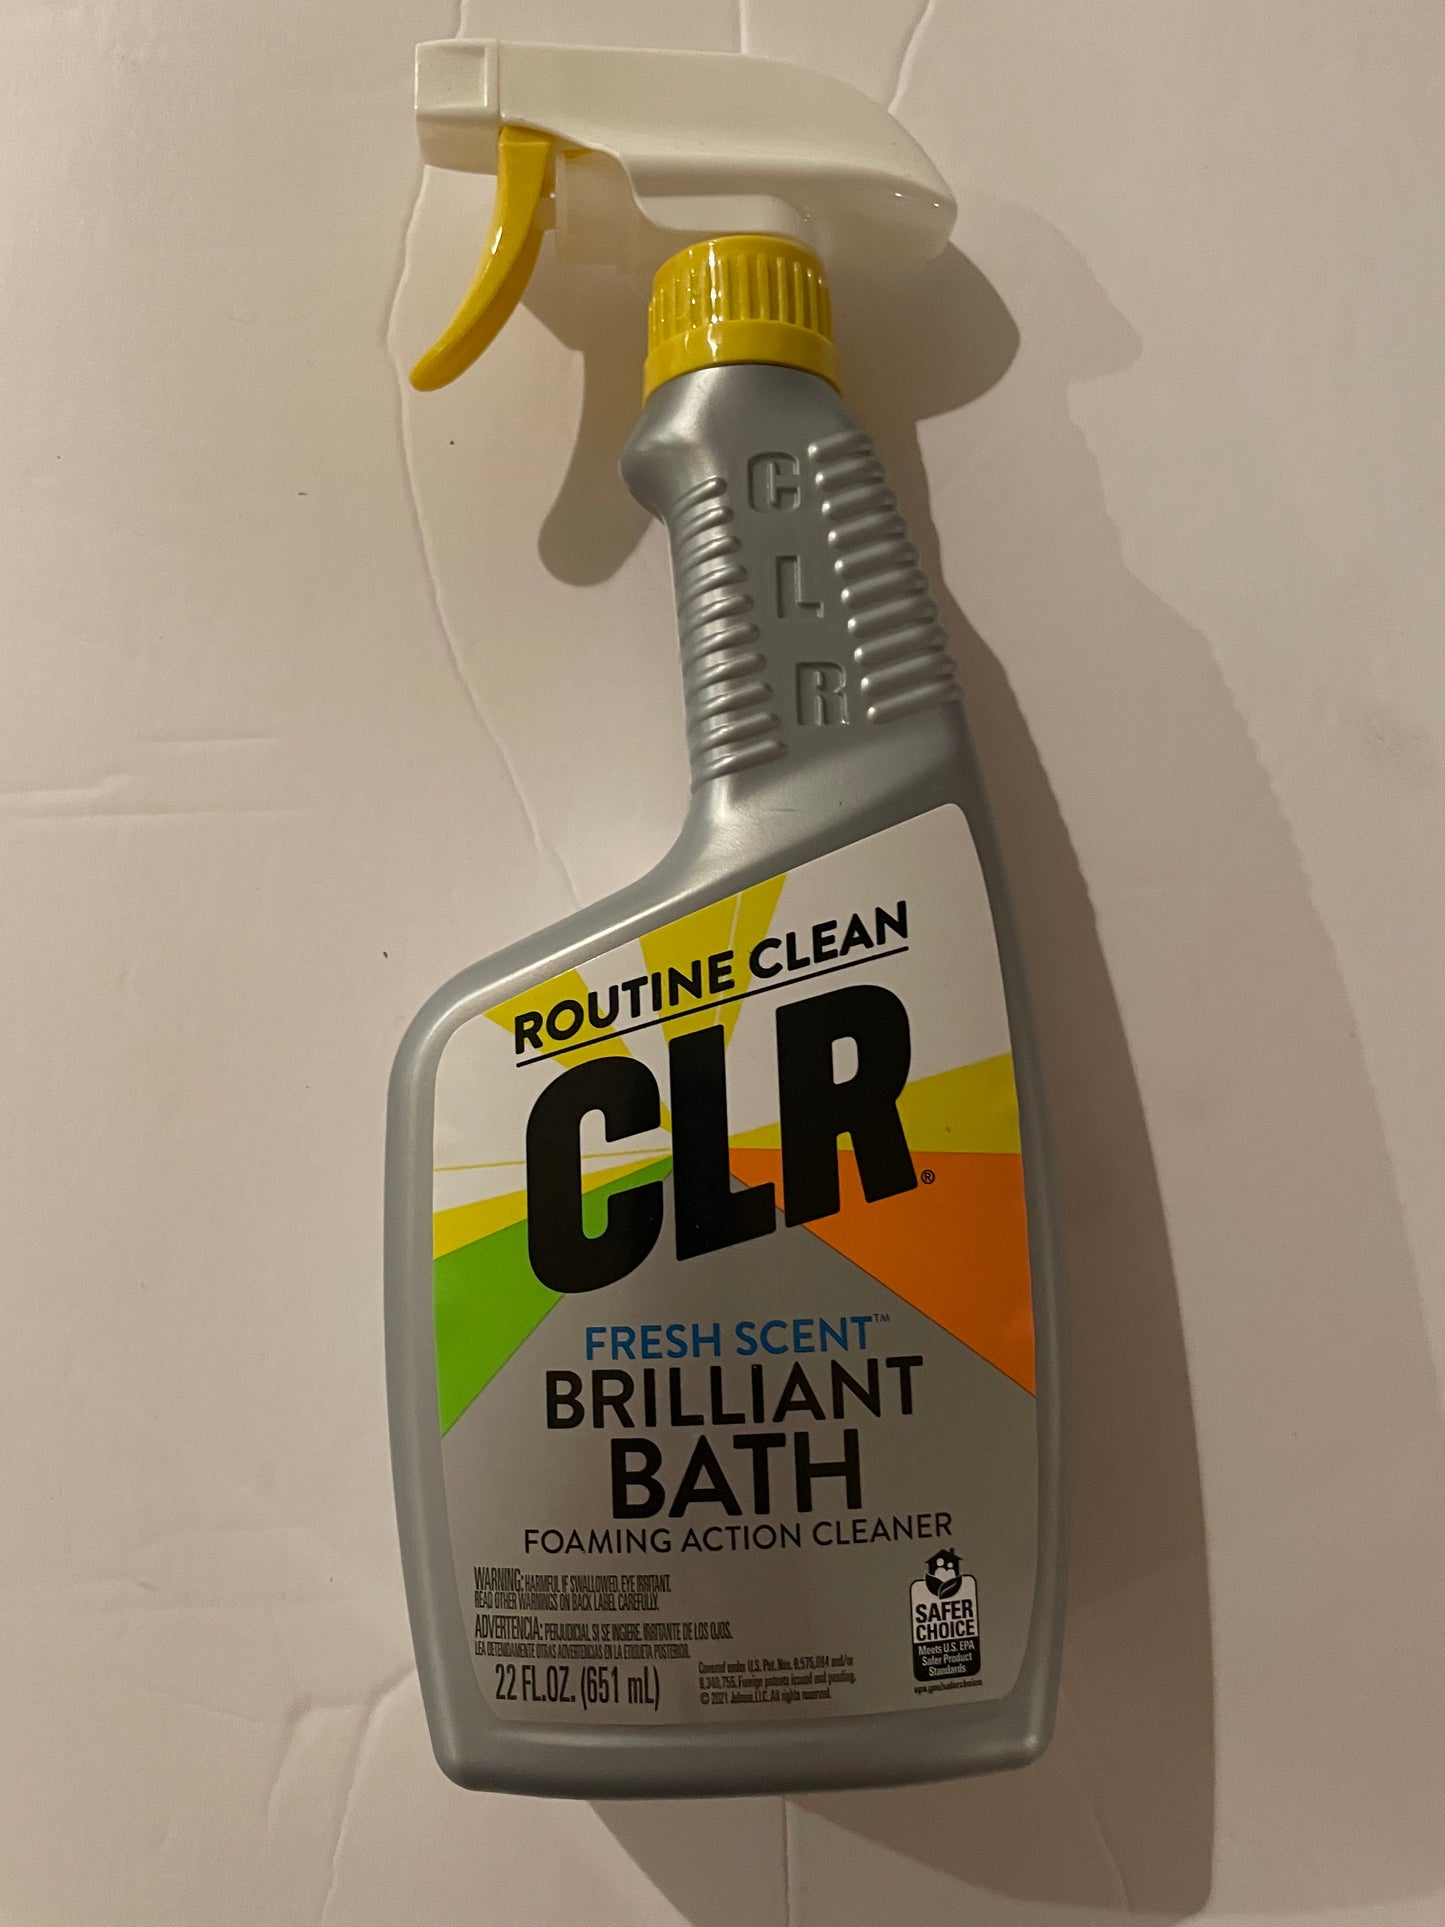 Household, Routine Clean CLR